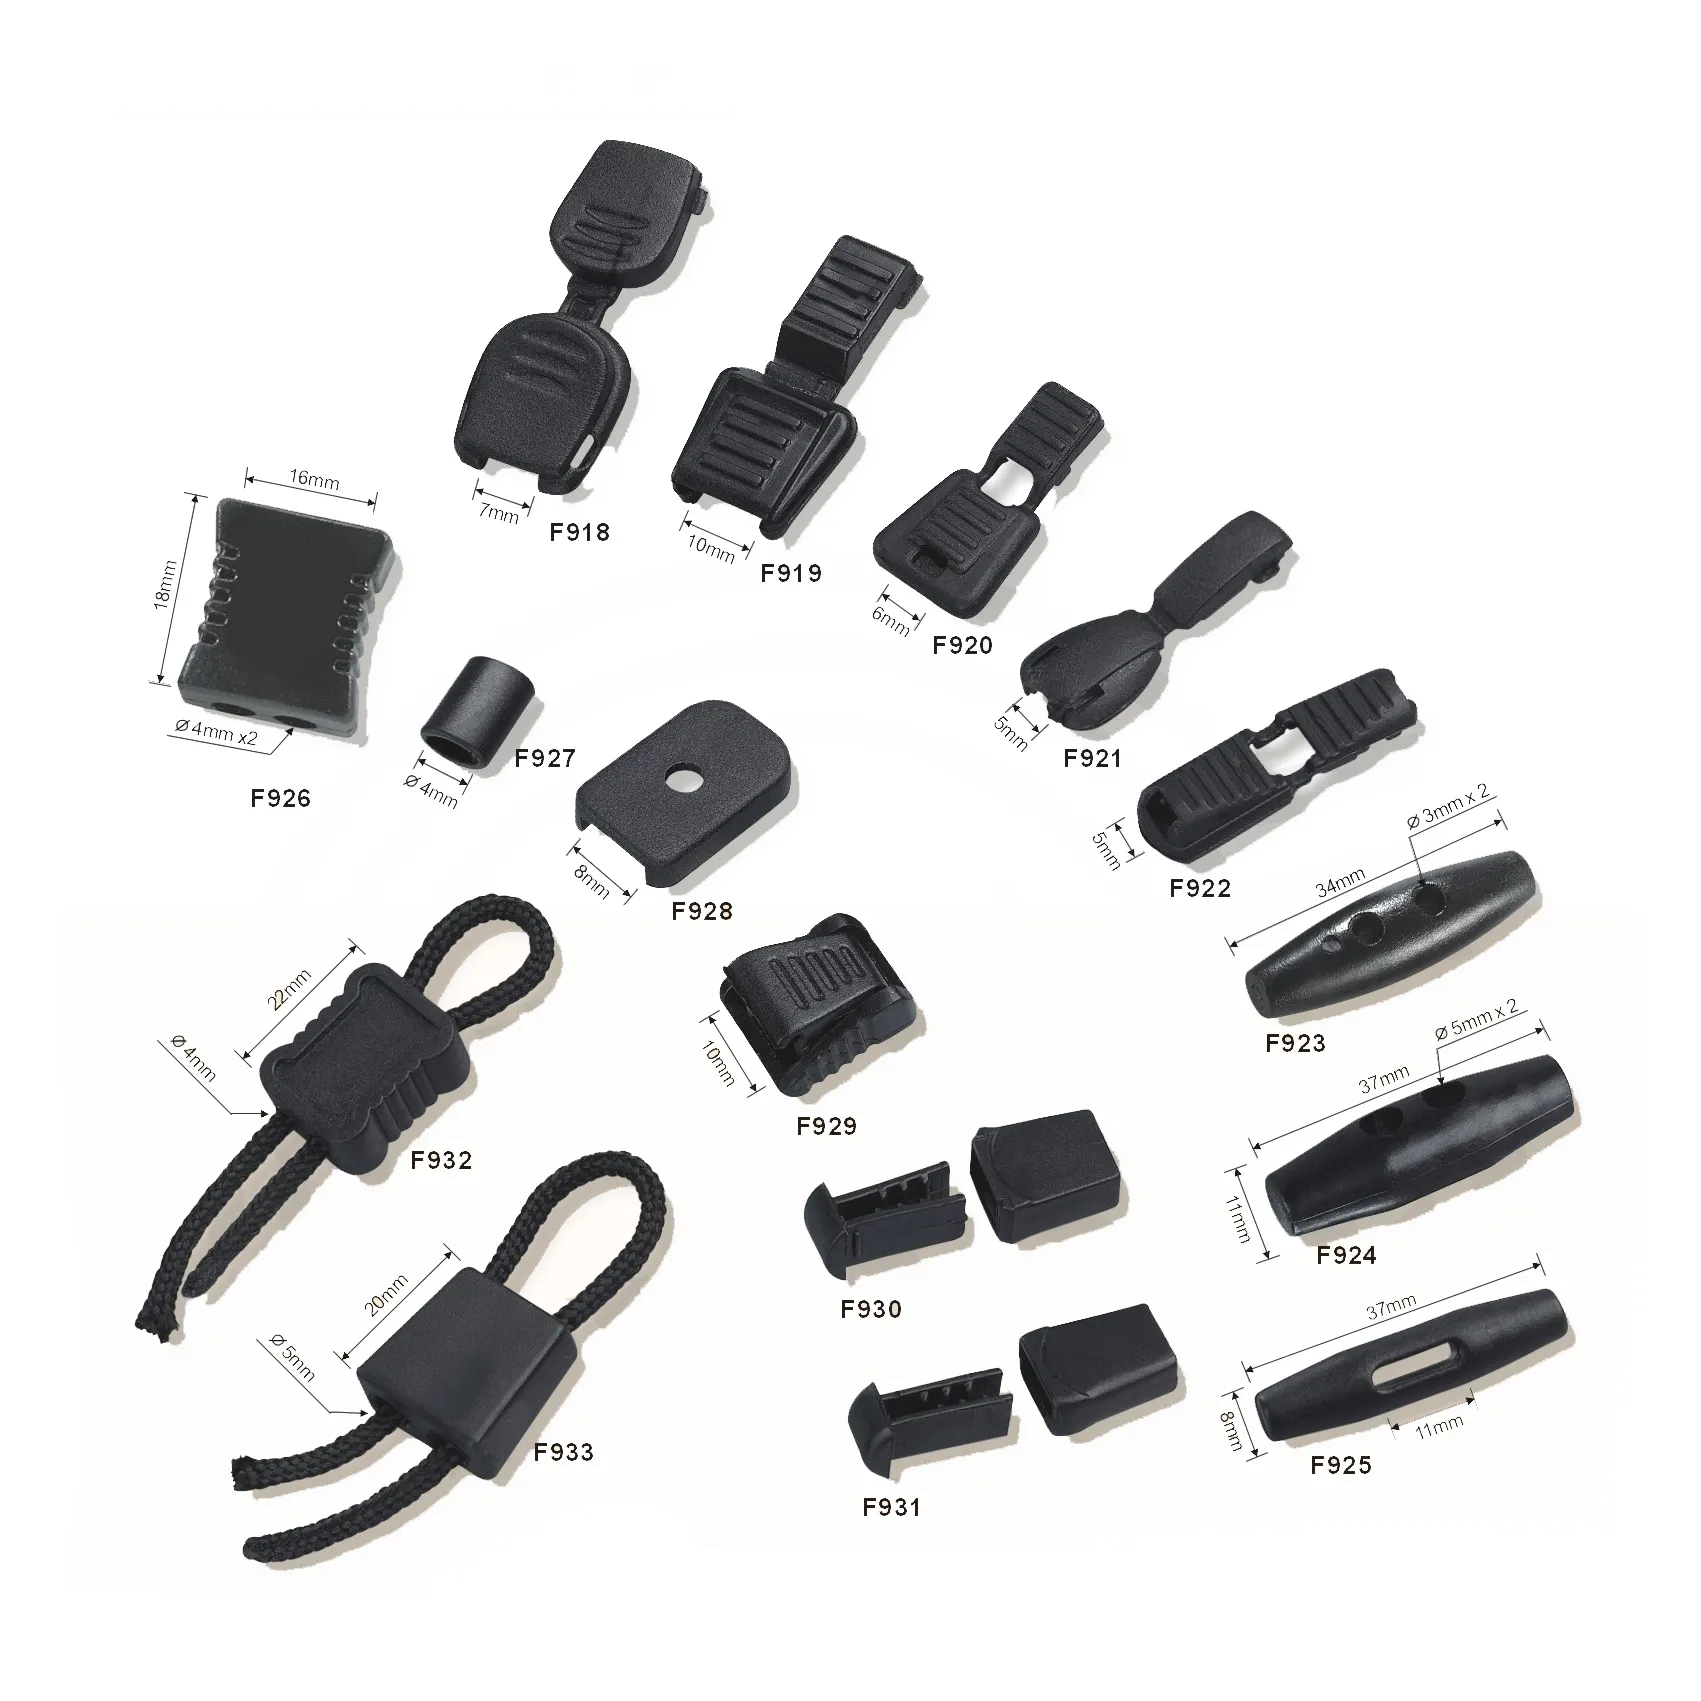 बहु शैली काले कॉर्ड समाप्त होता है सीट बेल्ट लगा लो फोन का पट्टा डोरी कार्यकर्ता टैग खड़ी आईडी कार्ड बिल्ला बैग सामान